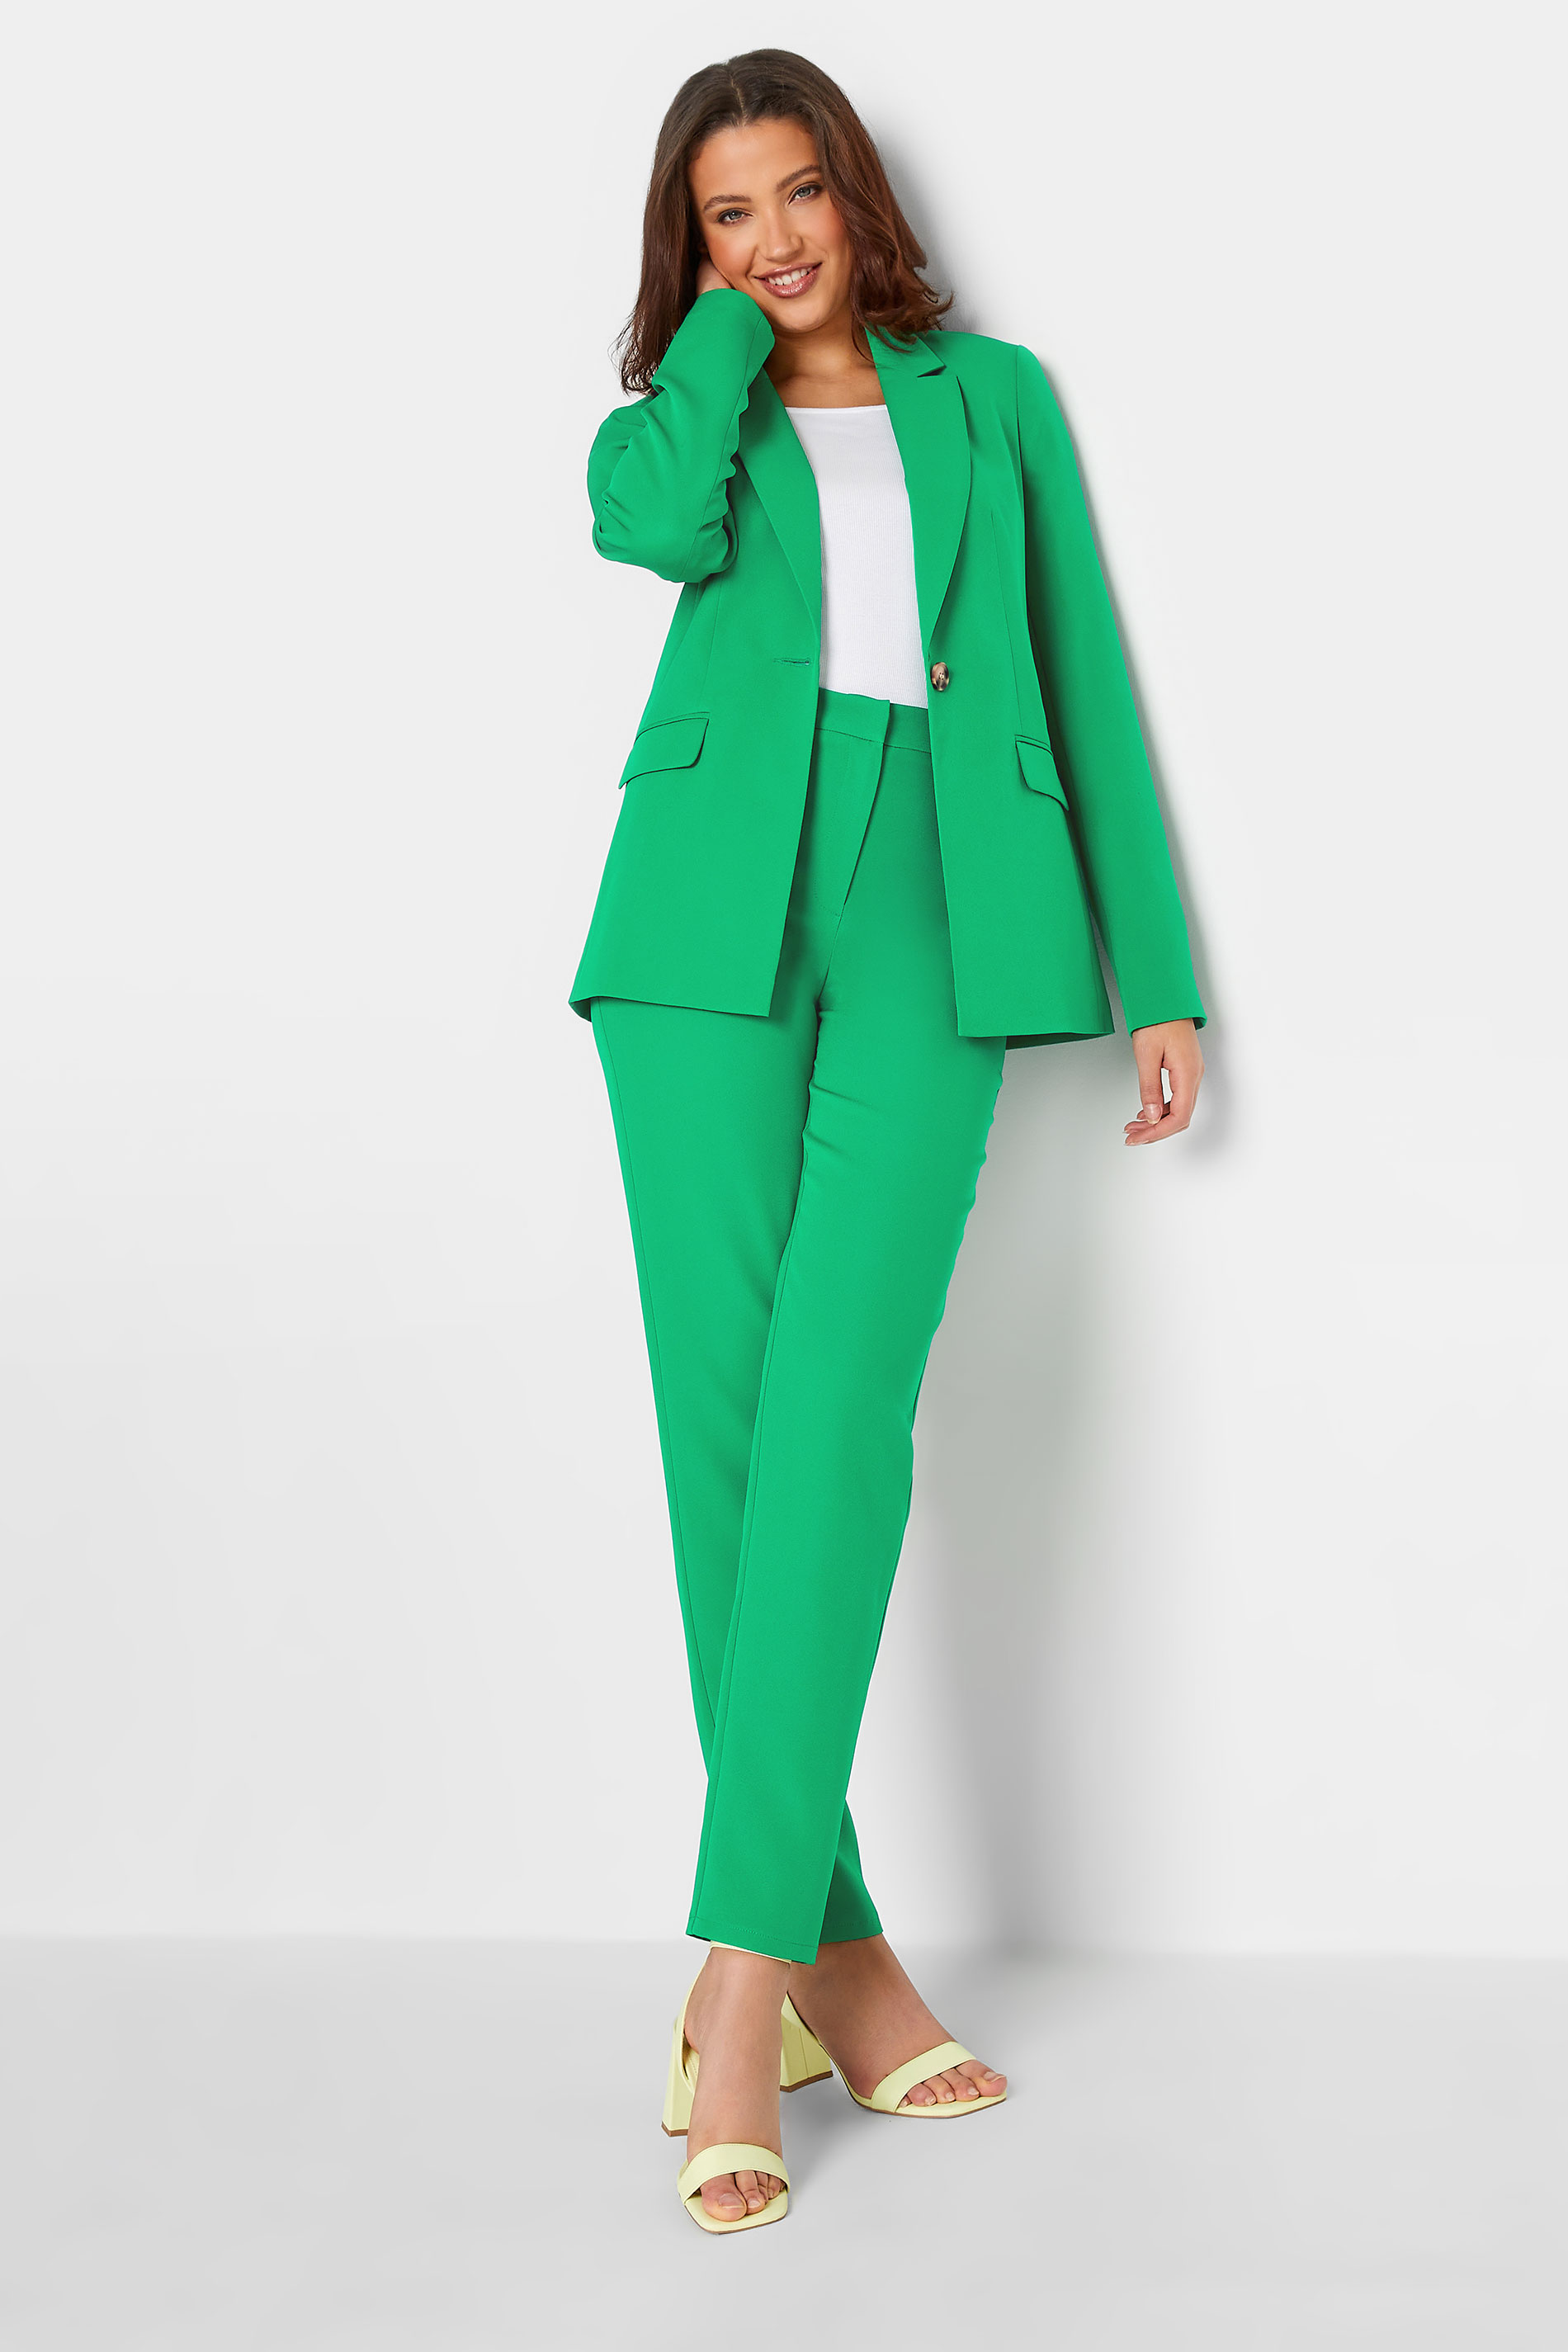 LTS Tall Women's Green Tailored Blazer | Long Tall Sally  2